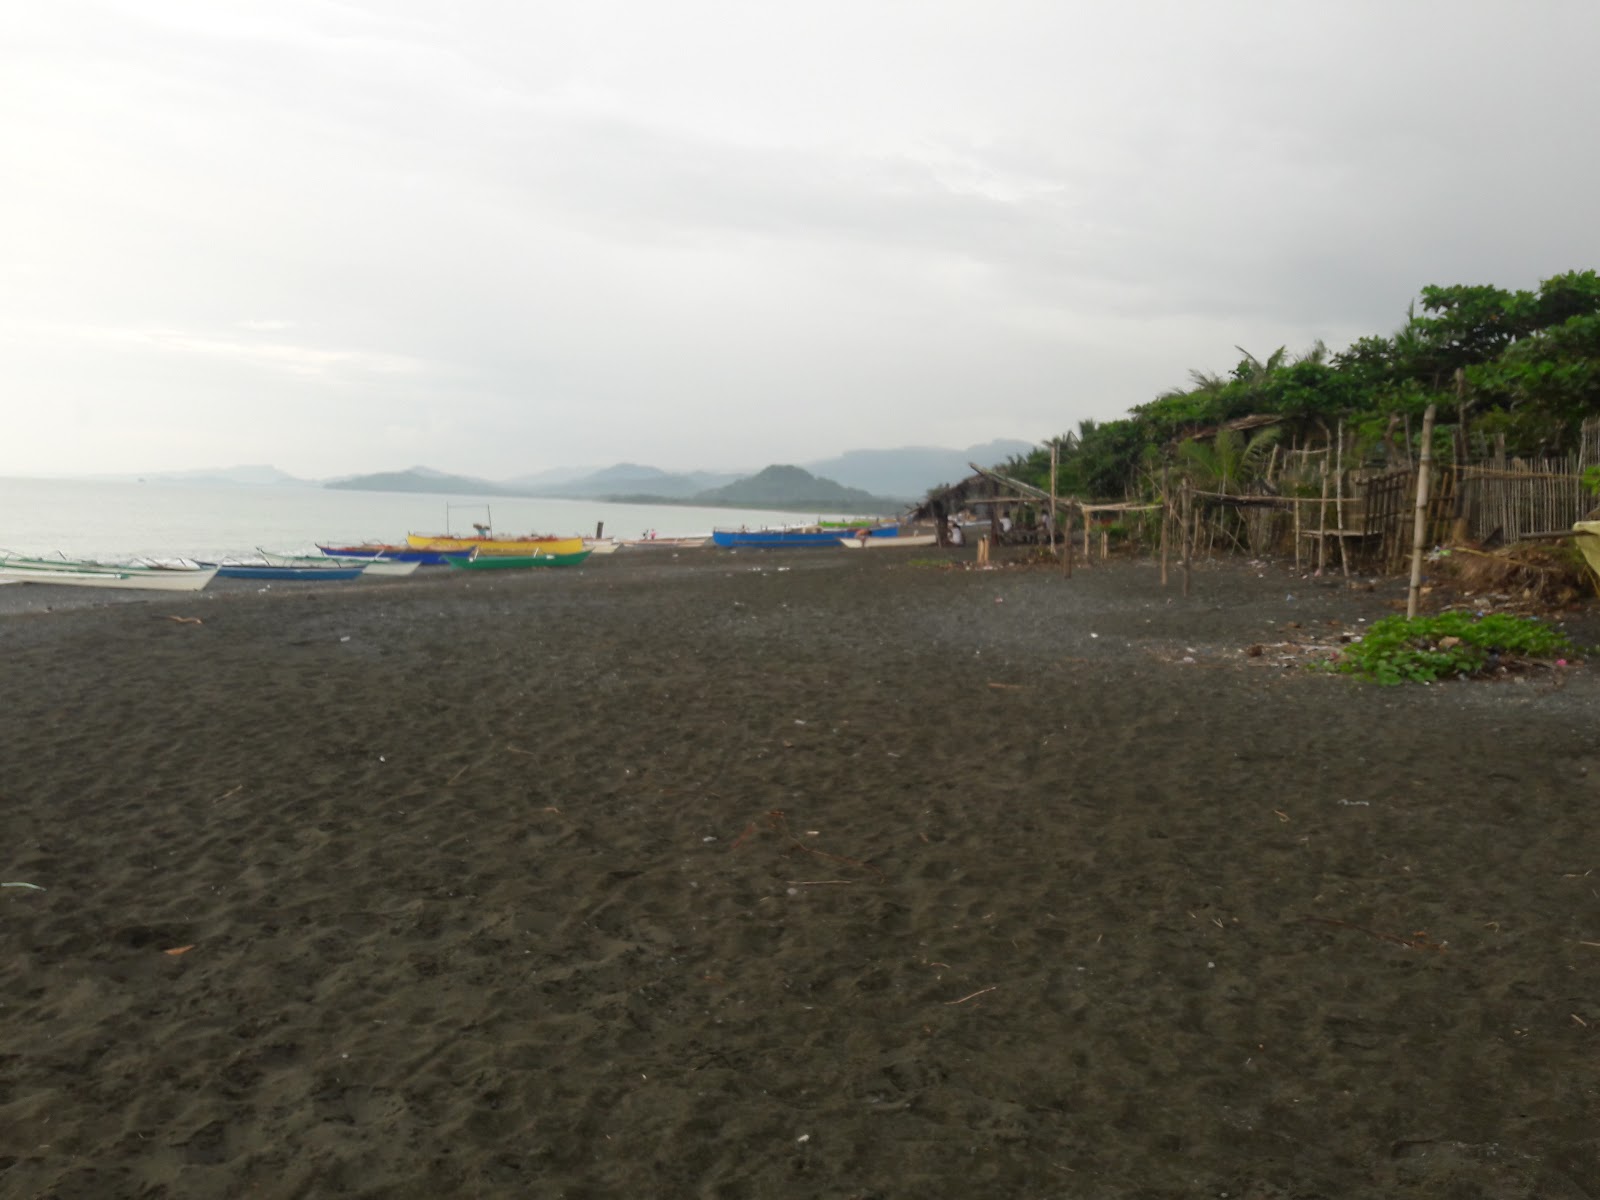 Zdjęcie Barangay Beach z proste i długie